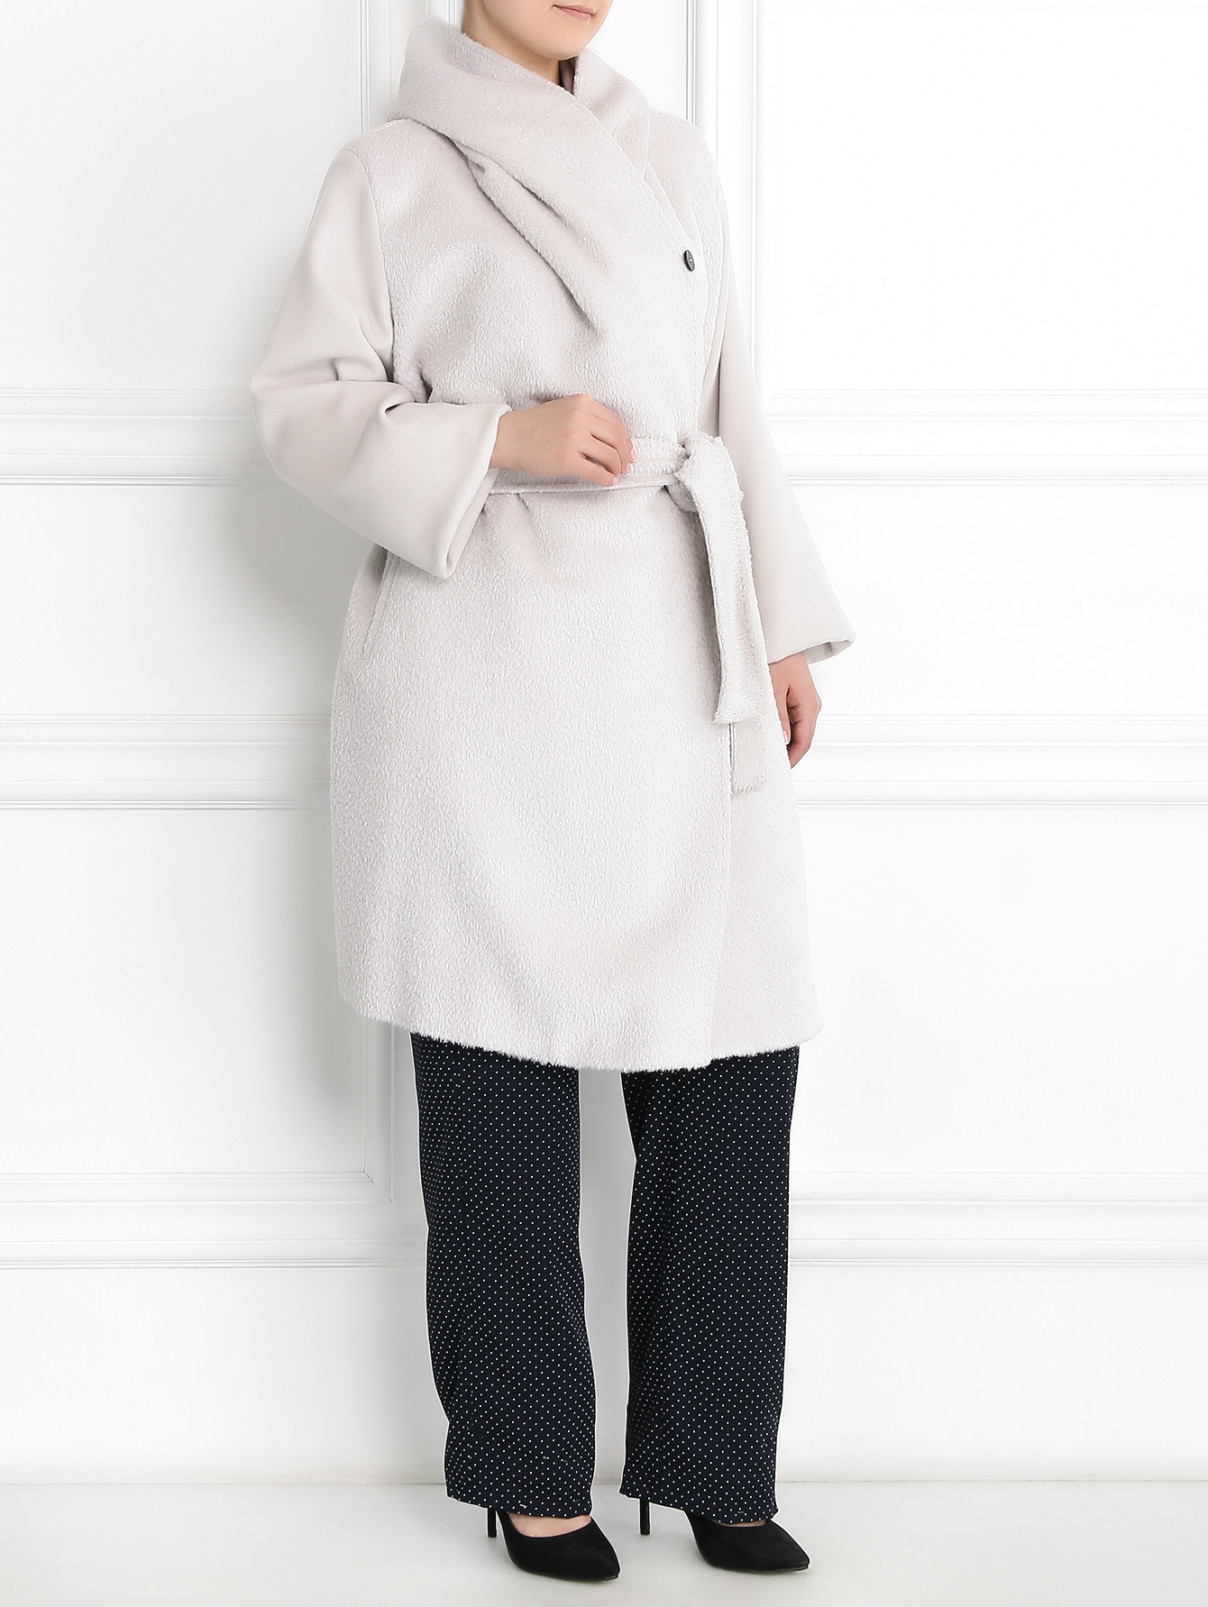 Пальто из шерсти и альпаки с поясом Marina Rinaldi  –  Модель Общий вид  – Цвет:  Серый